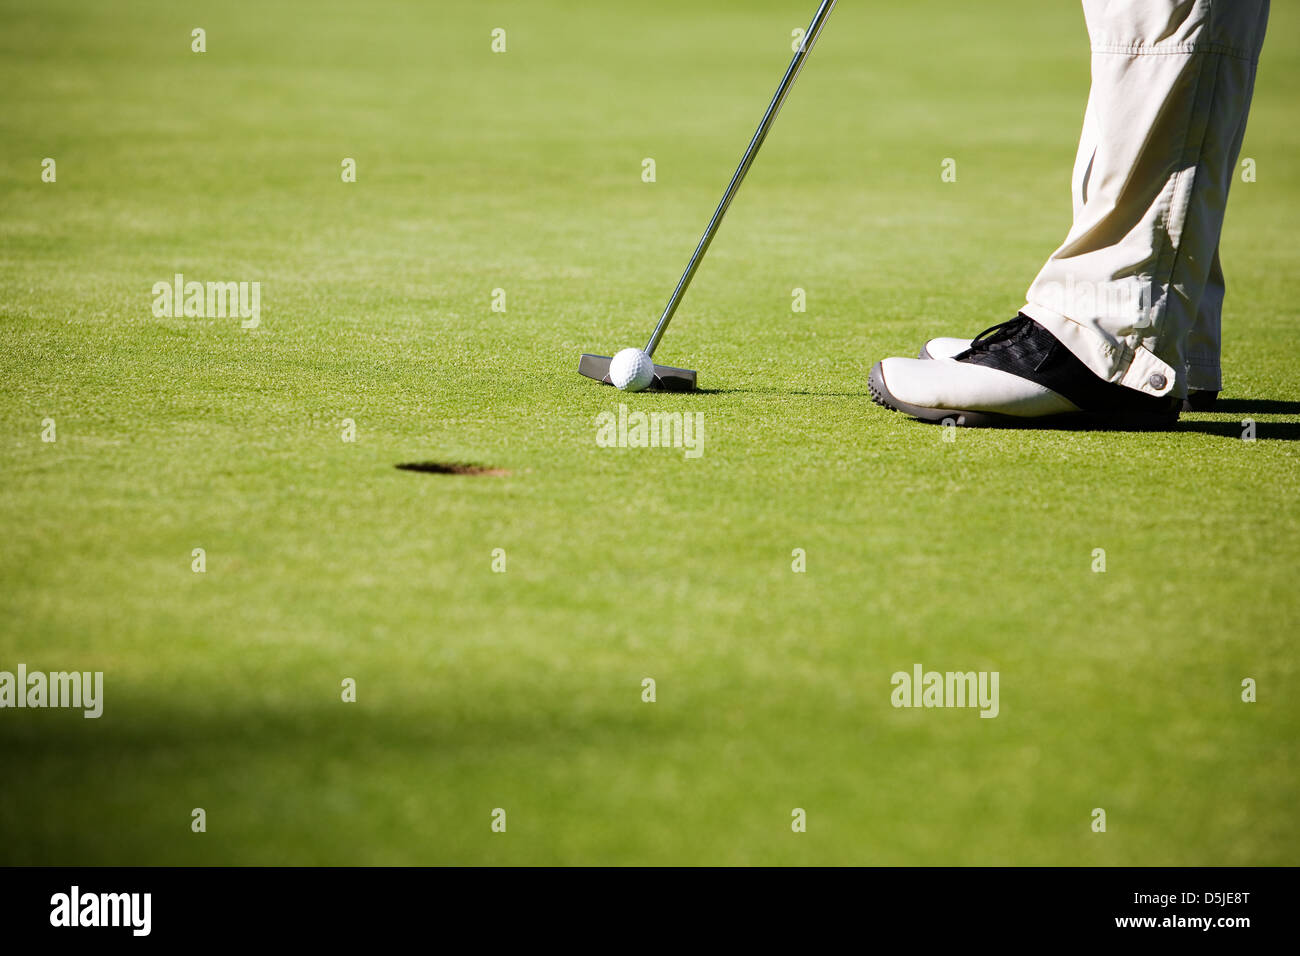 La mise au point sélective, golfeur sur balle de golf Banque D'Images